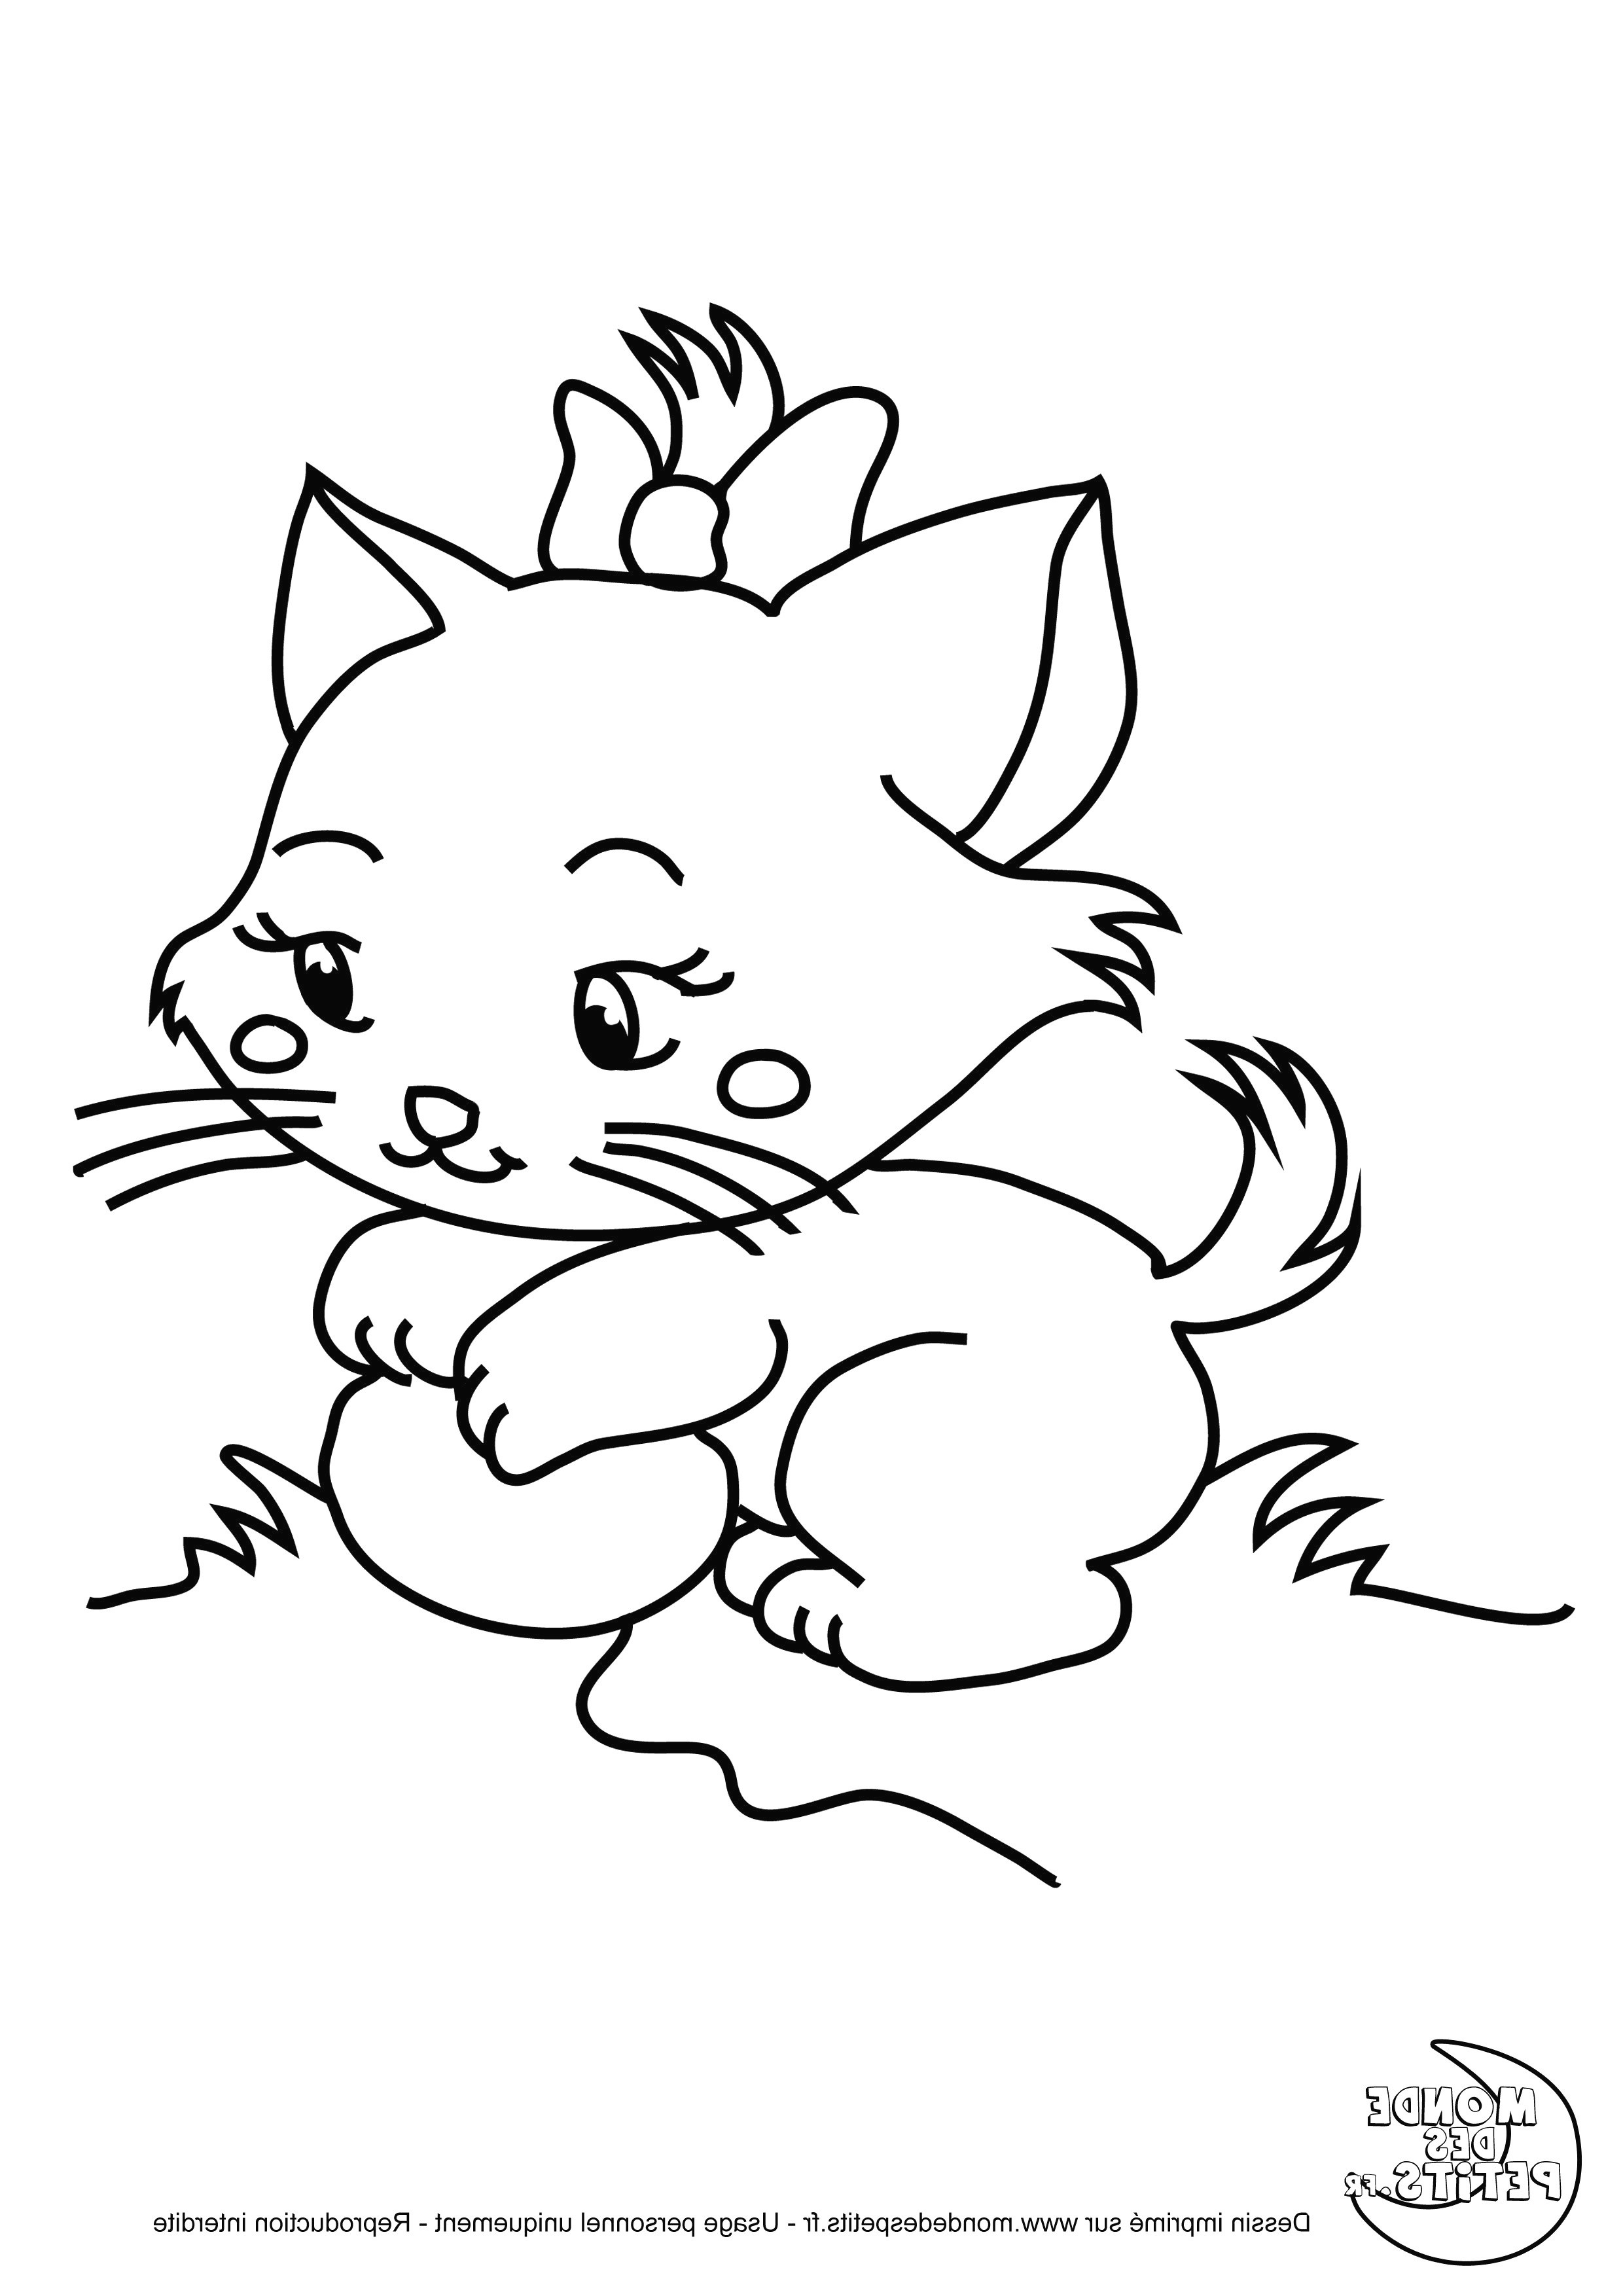 ment dessiner un cochon d inde kawaii avec dessin cochon dinde kawaii et dessin de lapin facile a reproduire 36 px dessin de lapin facile a reproduire